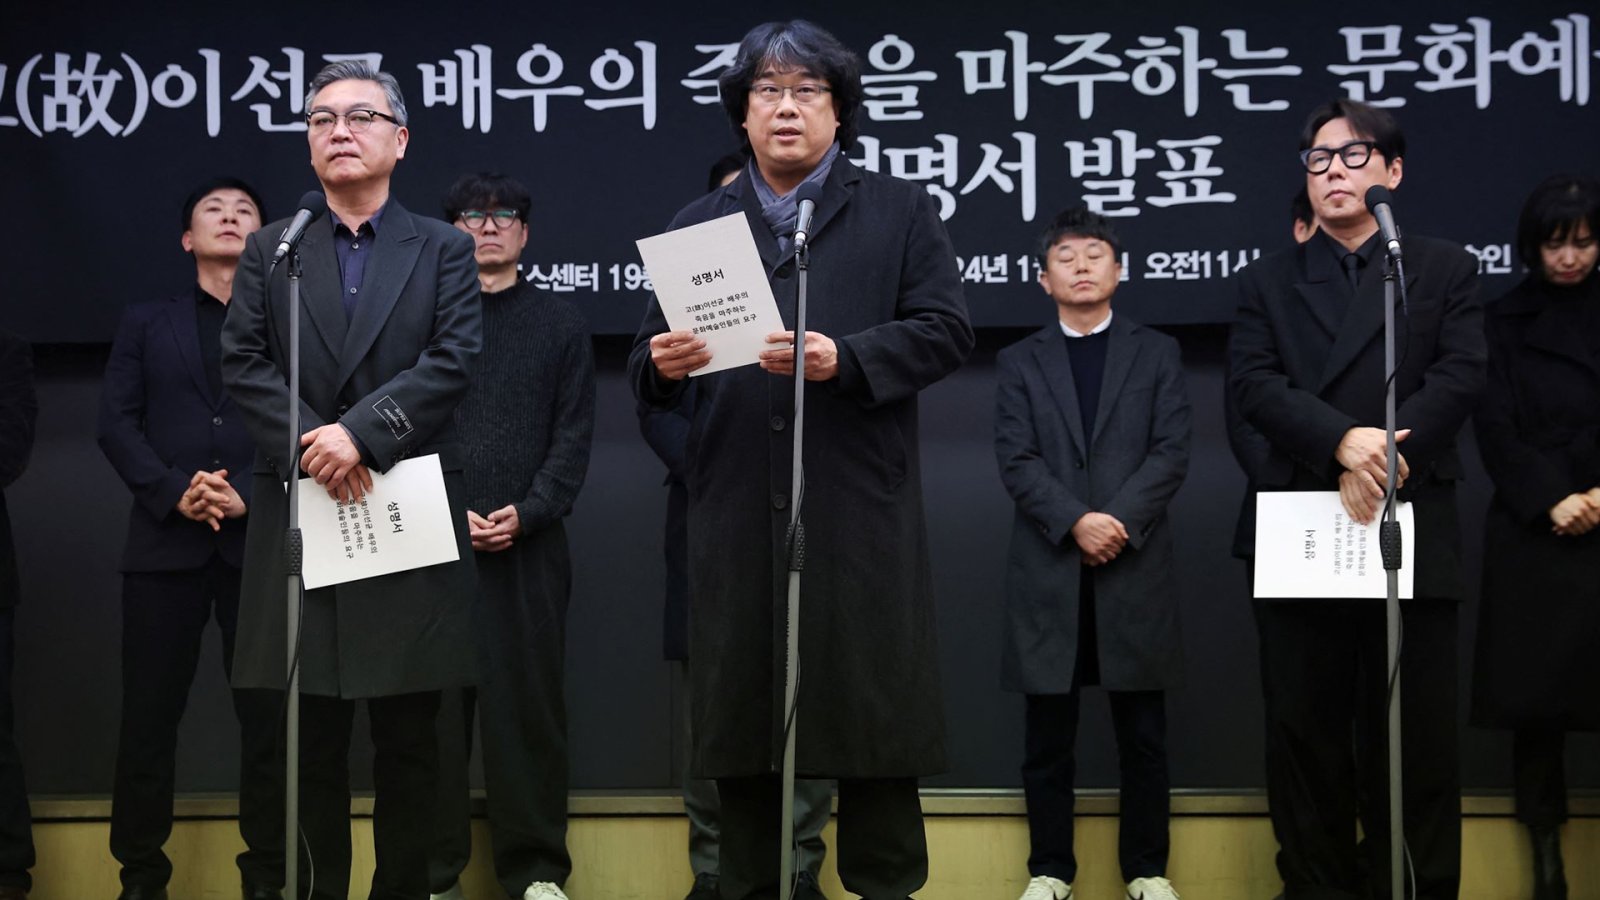 Bong Joon-ho นำคนบันเทิงเกาหลีใต้ เรียกร้องตรวจสอบการทำงาน ‘ตำรวจ’ – ‘สื่อ’ กรณีการเสียชีวิตของ Lee Sun-kyun